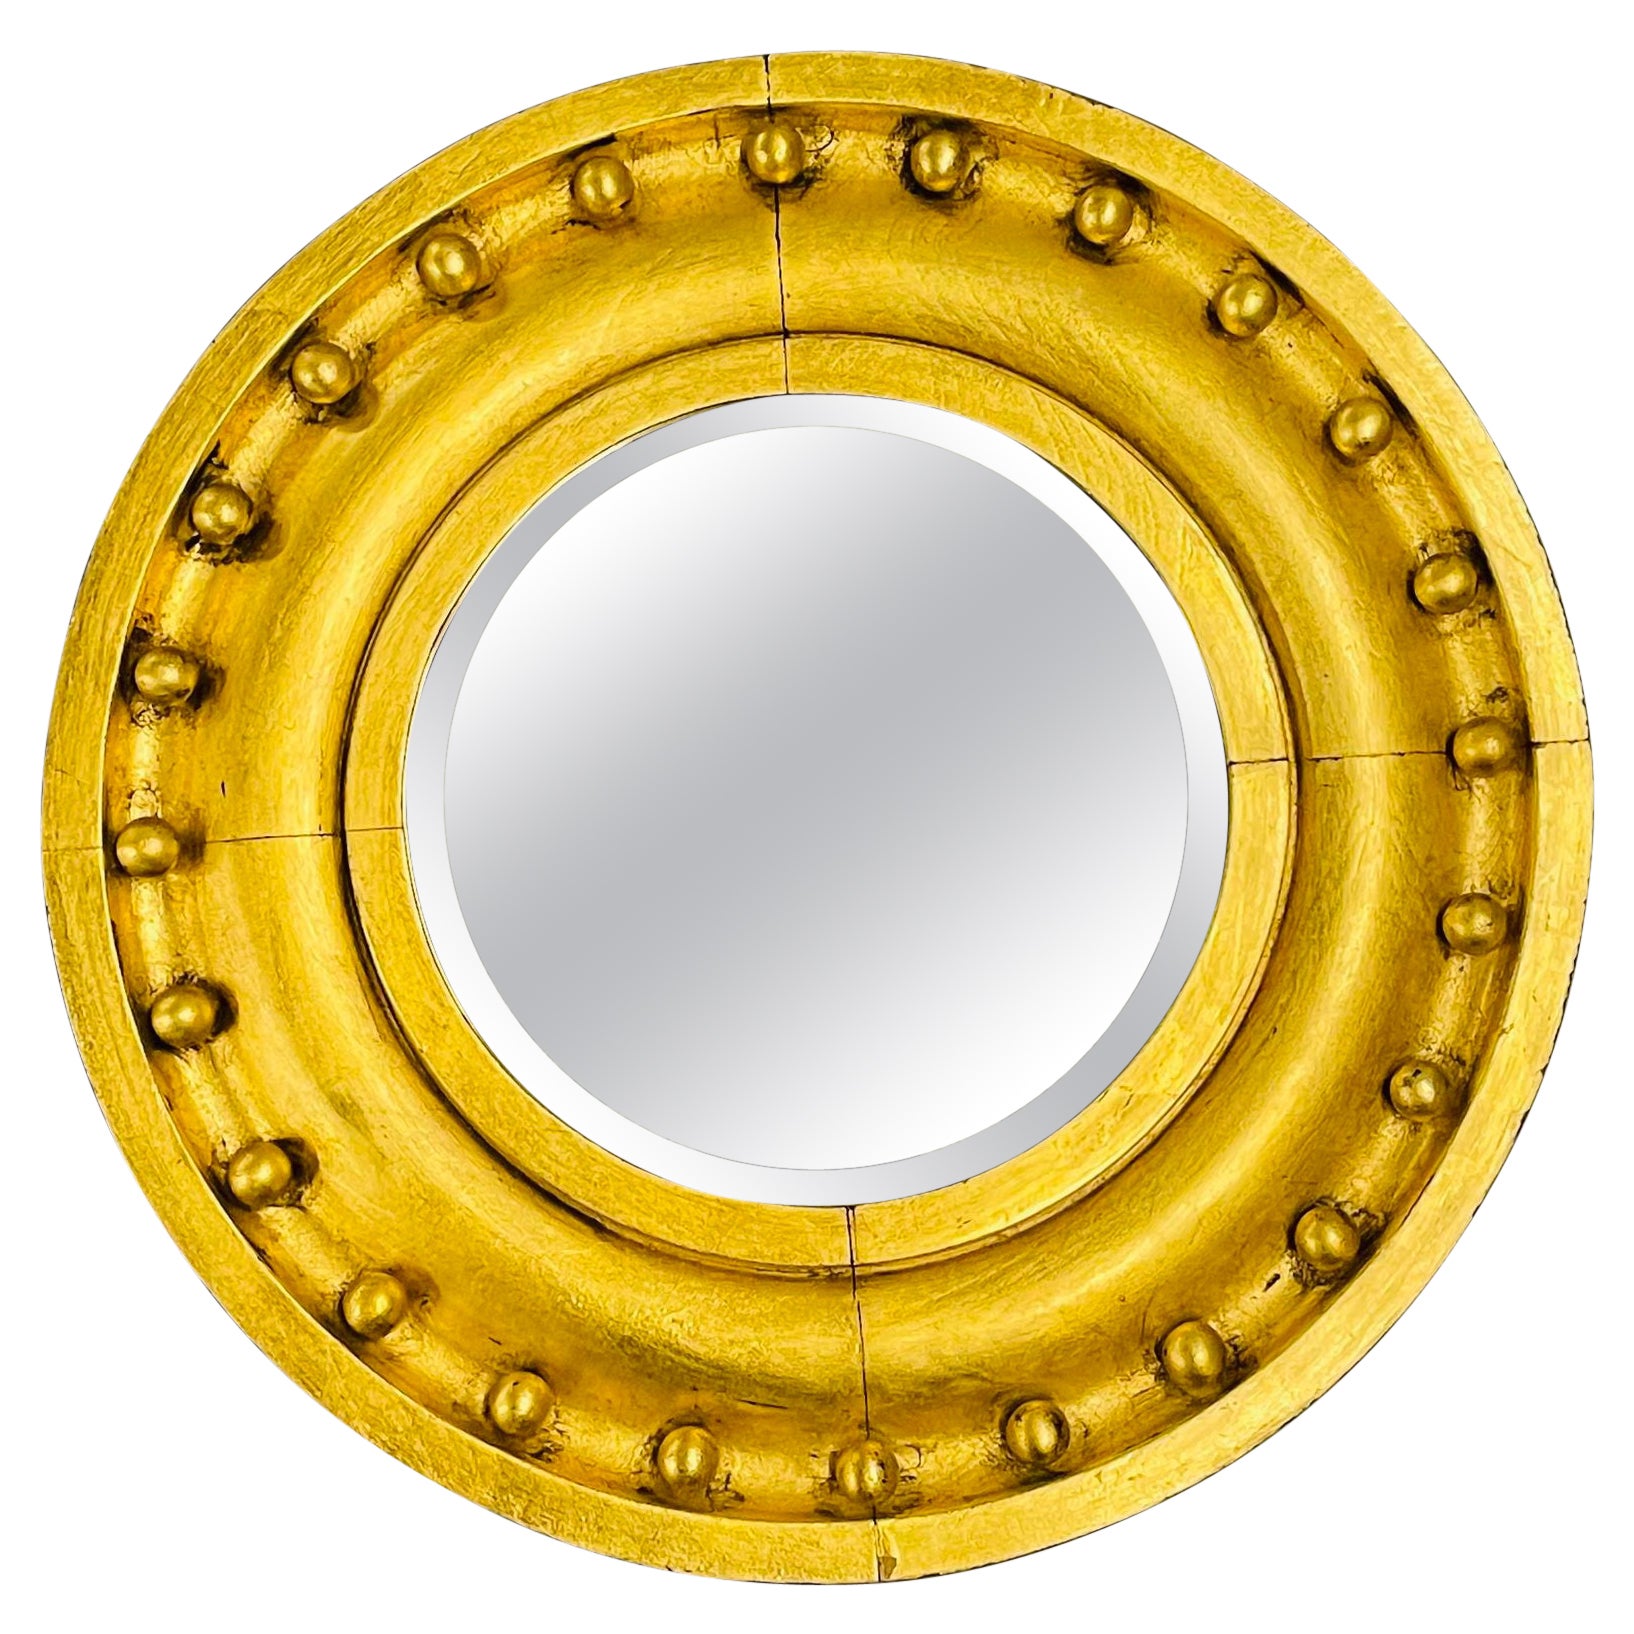 Miroir circulaire de style fédéral, mur / pilier / vanité en bois doré